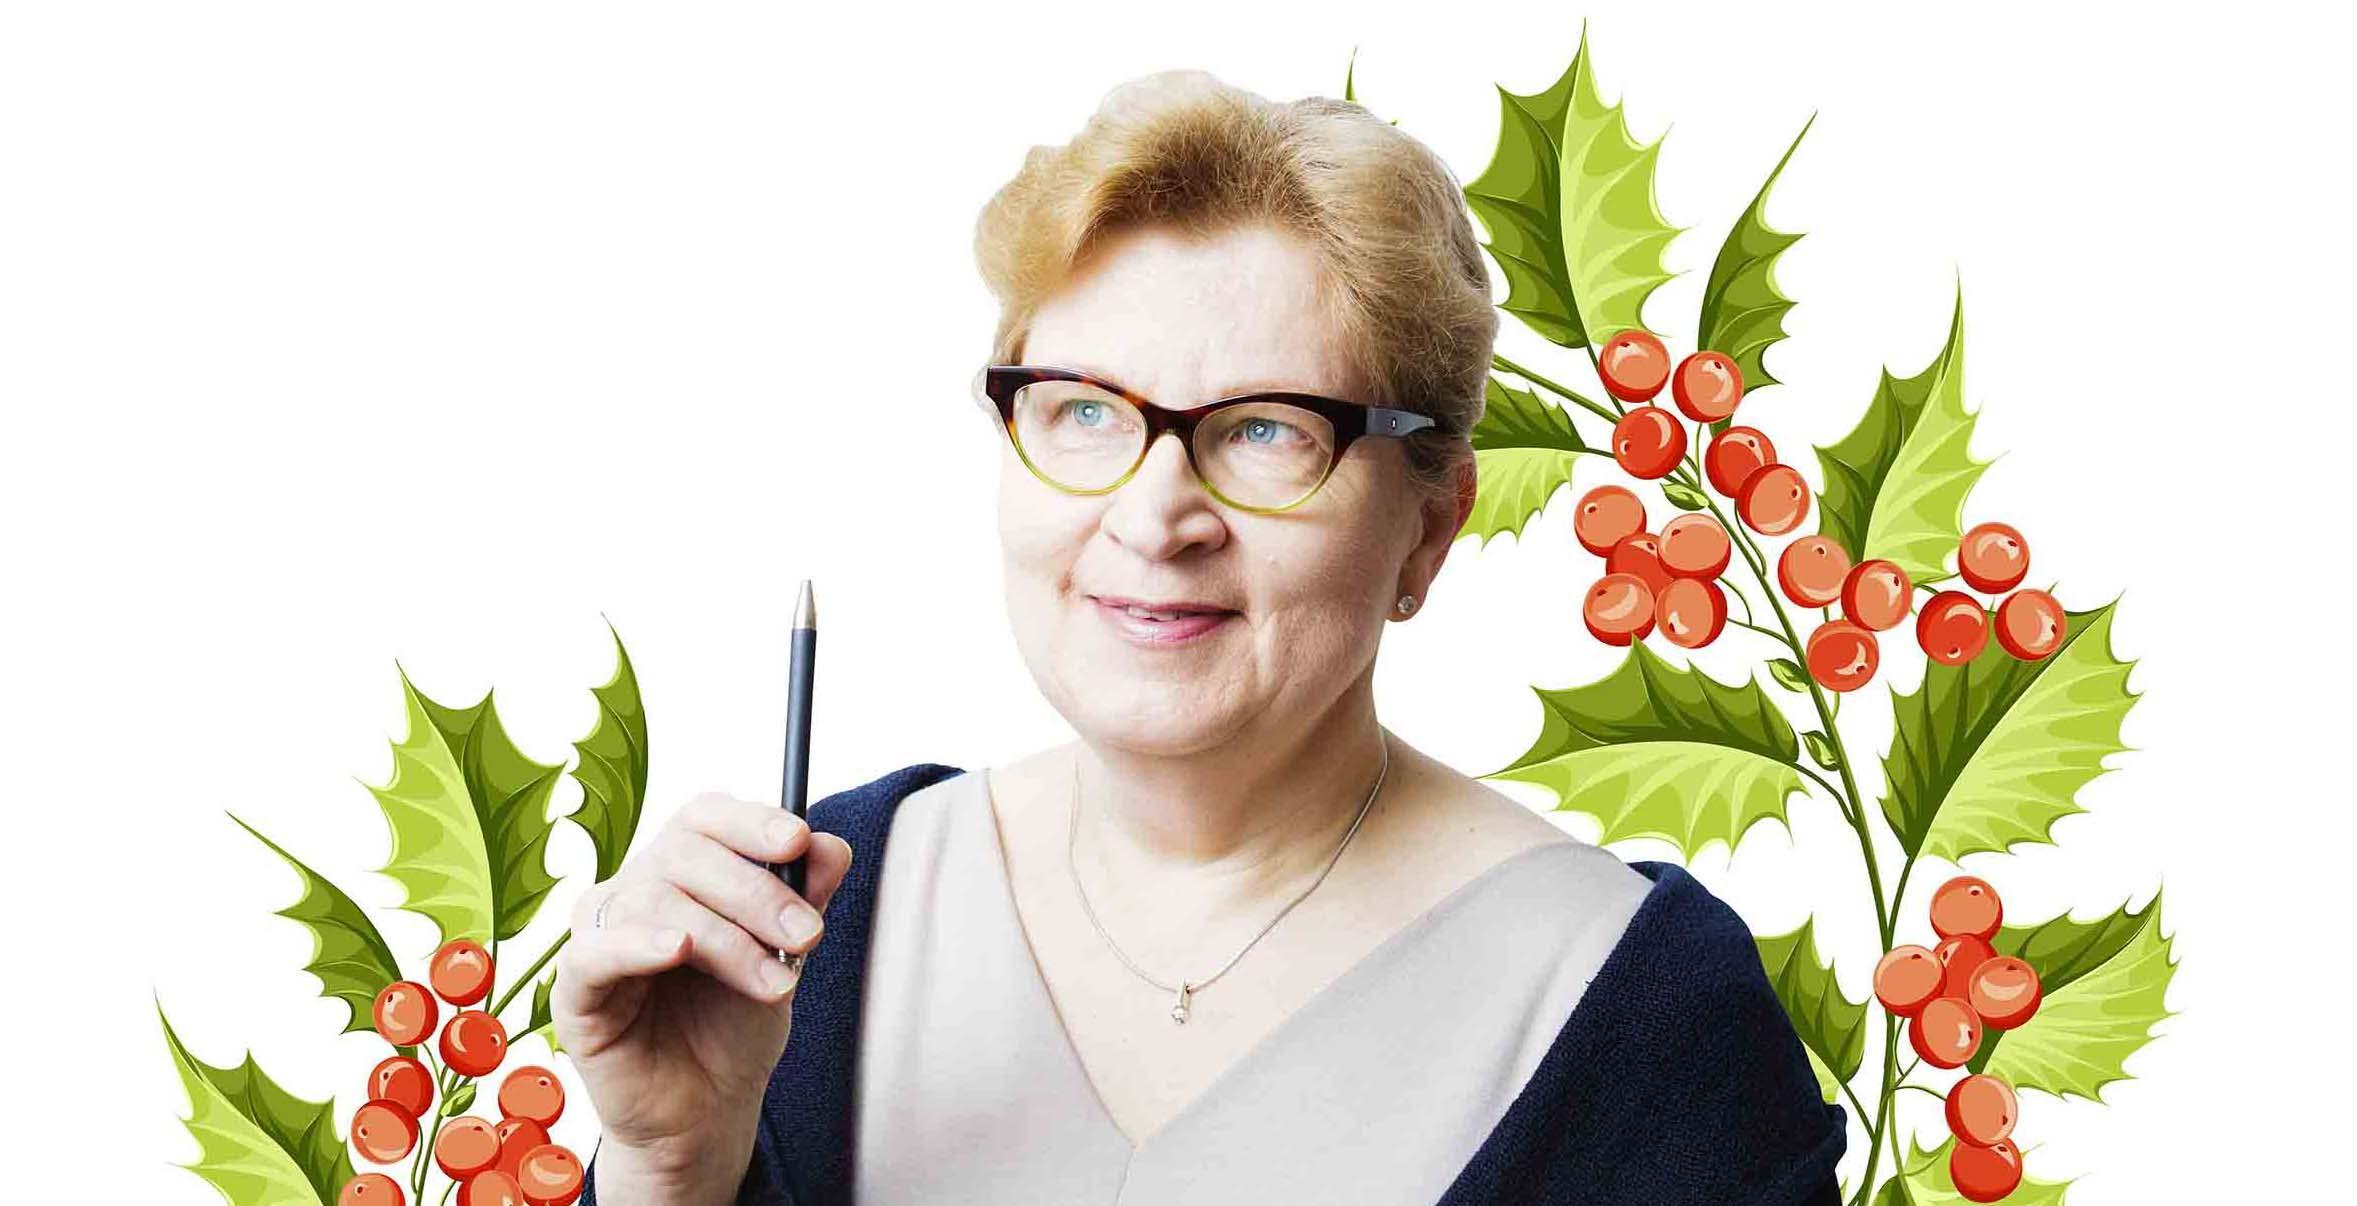 Iloinen, silmälasipäinen nainen pitää kynää kädessään. Taustalla piirrettyjä joulumisteleitä.